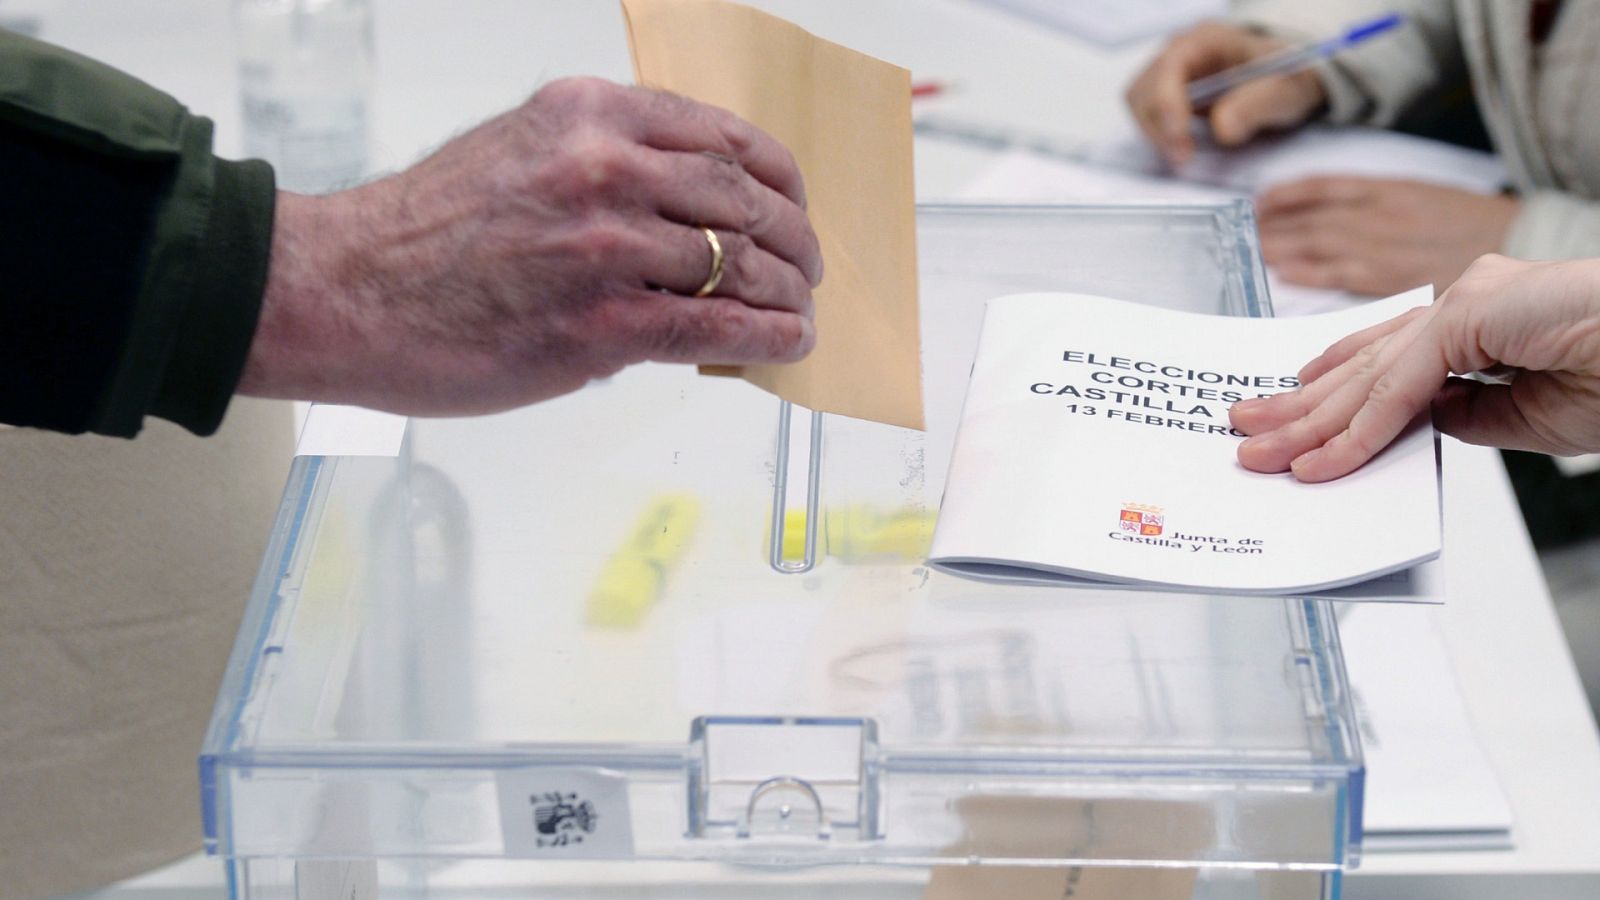 Castilla y León: ¿Por qué el recuento electoral es tan rápido?